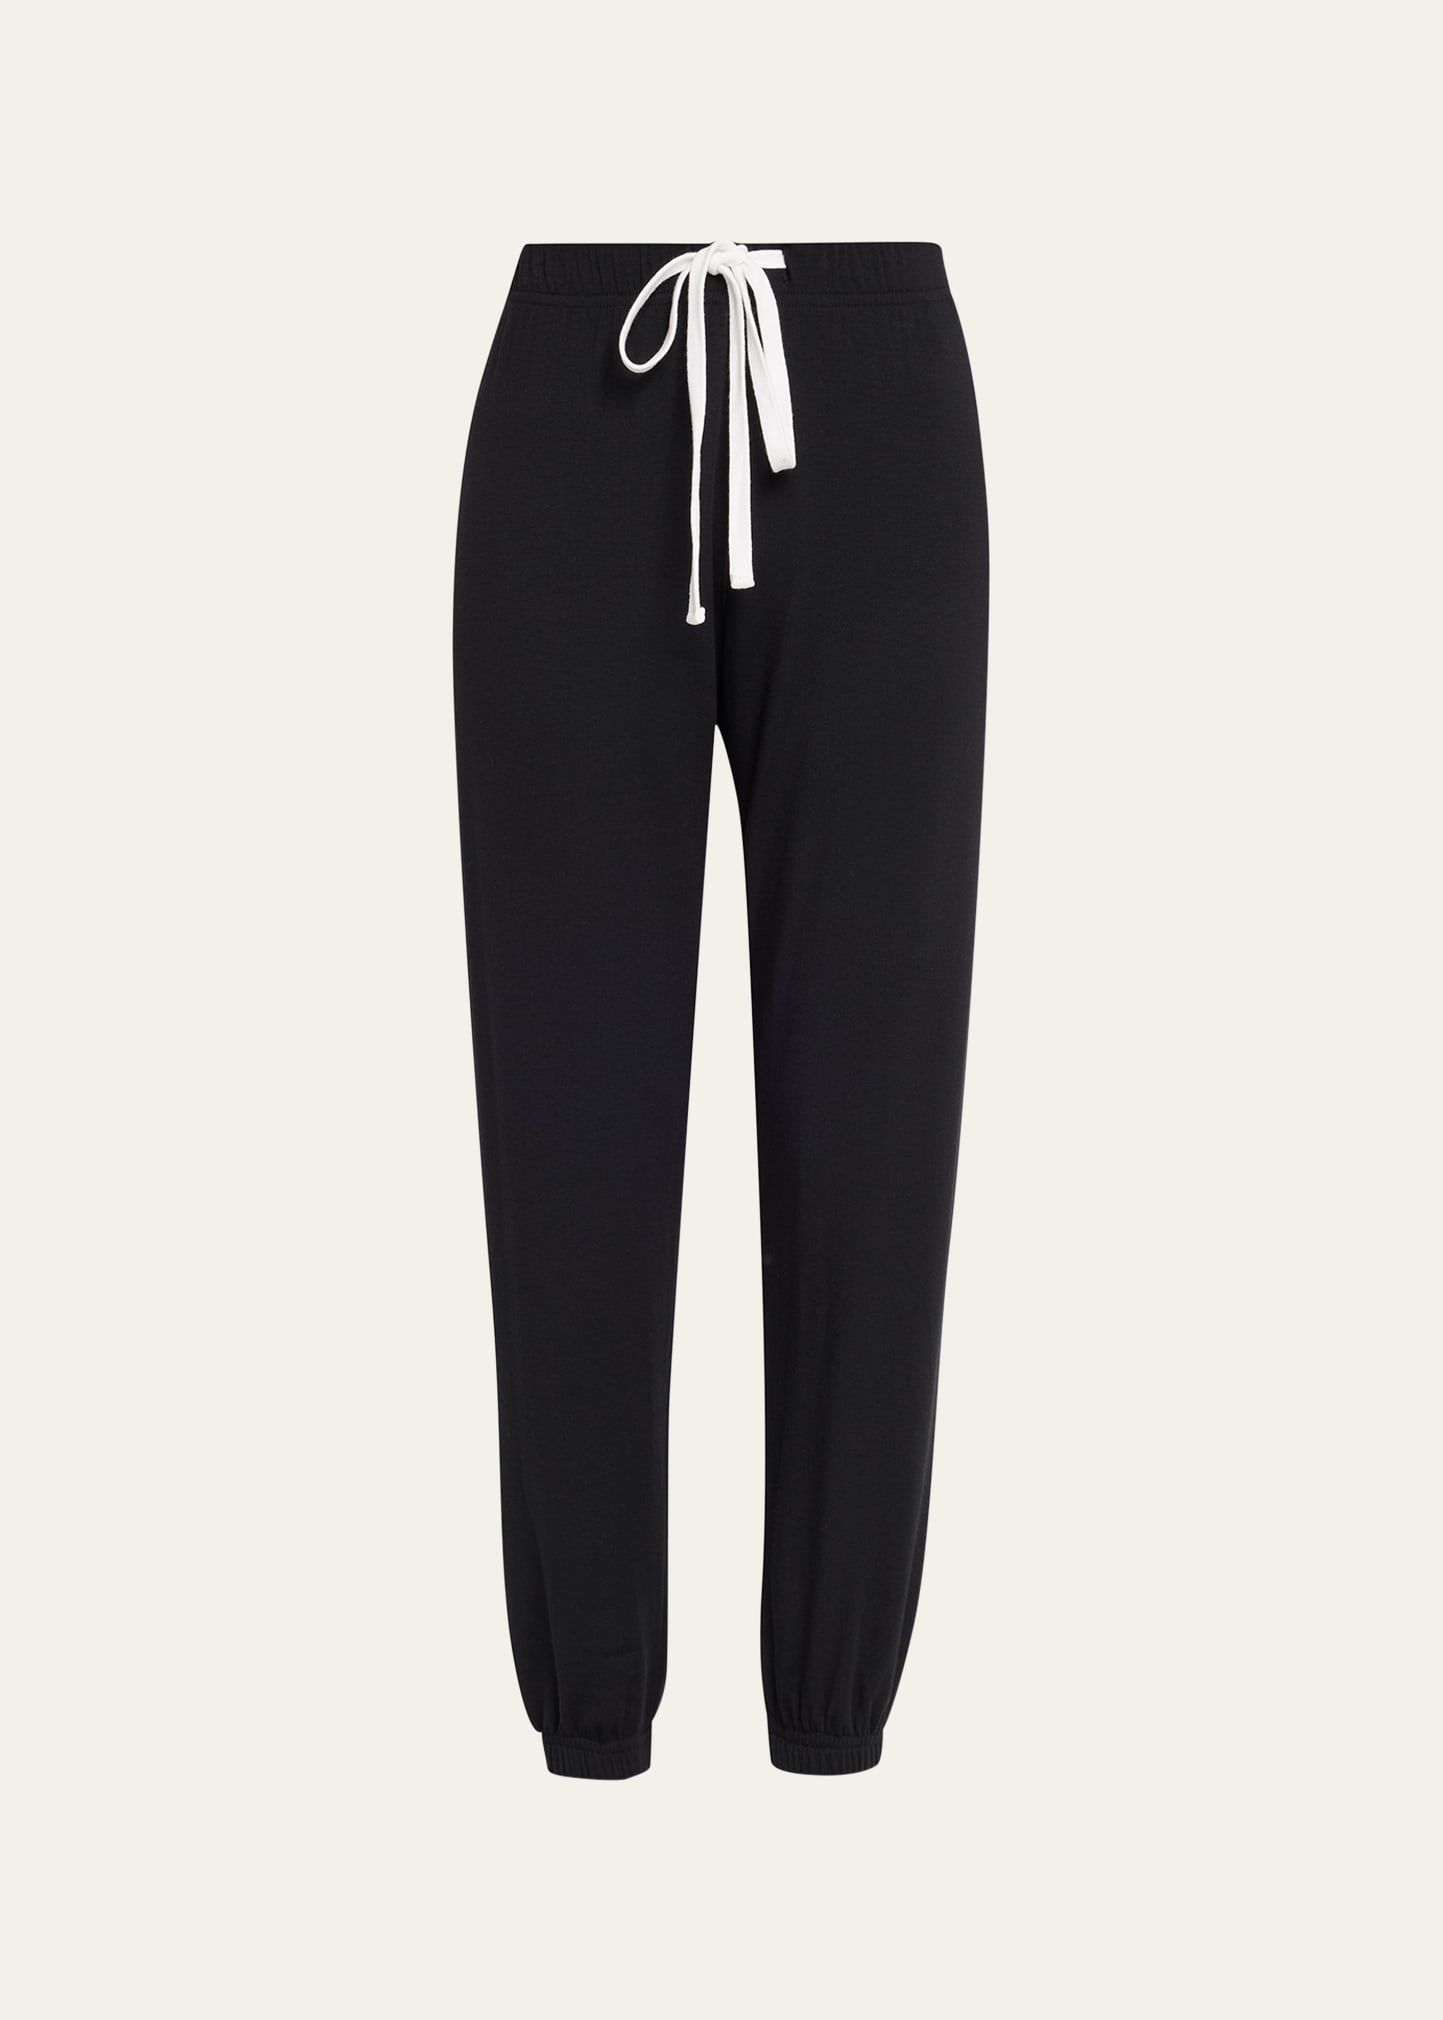 Splits59 Sonja Fleece Sweatpants In Black